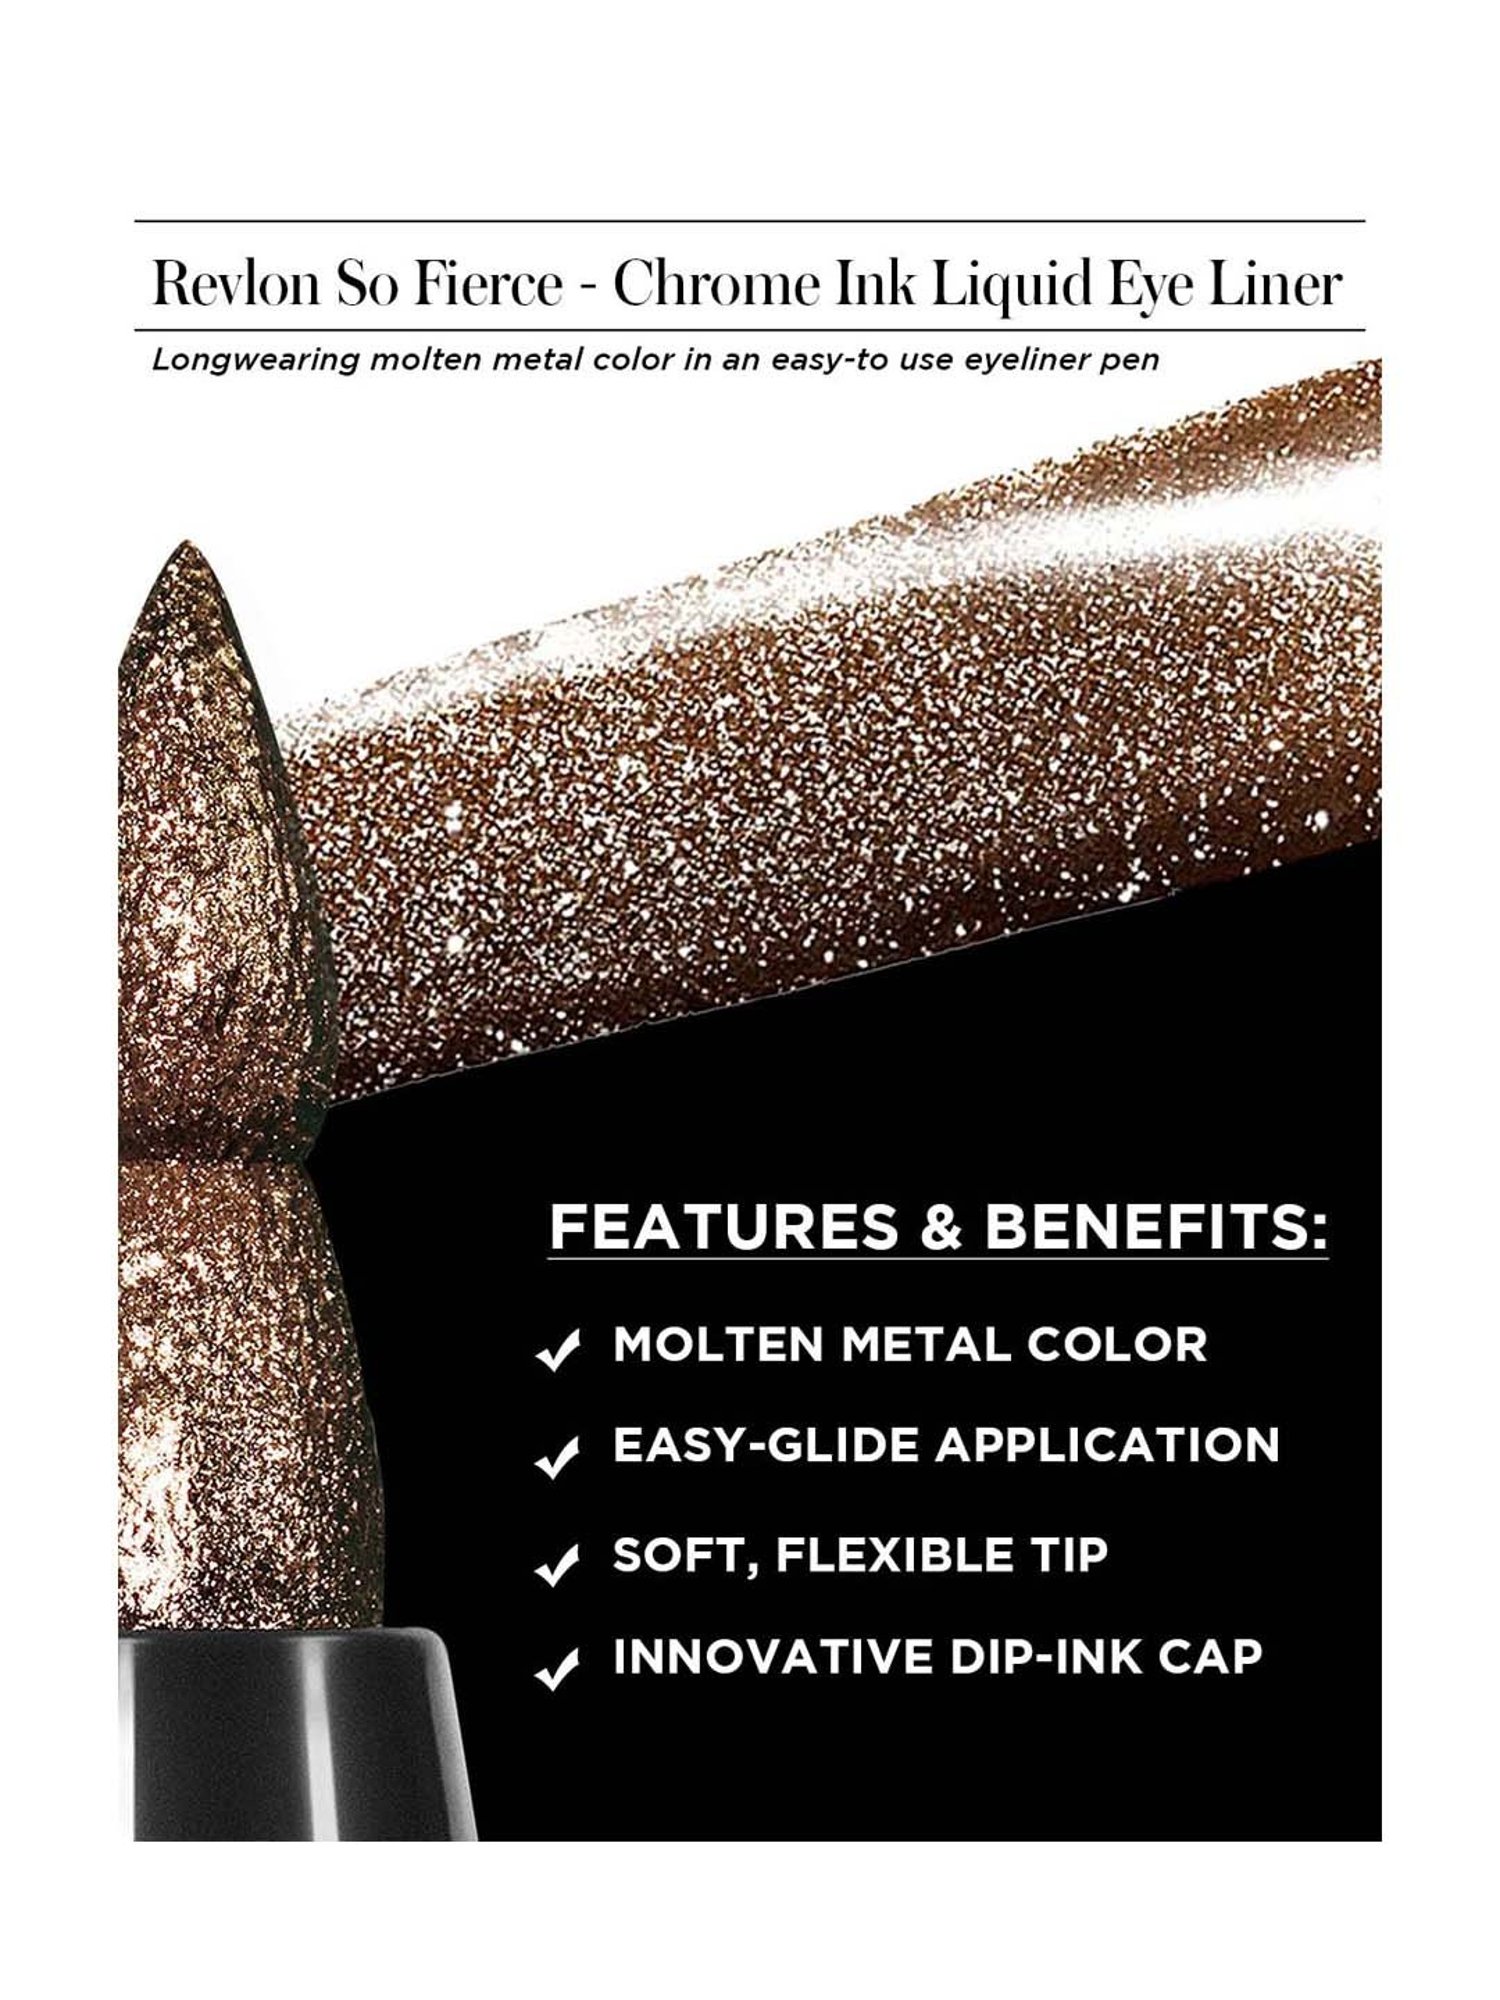 So Fierce Chrome Ink Liquid Liner - Revlon